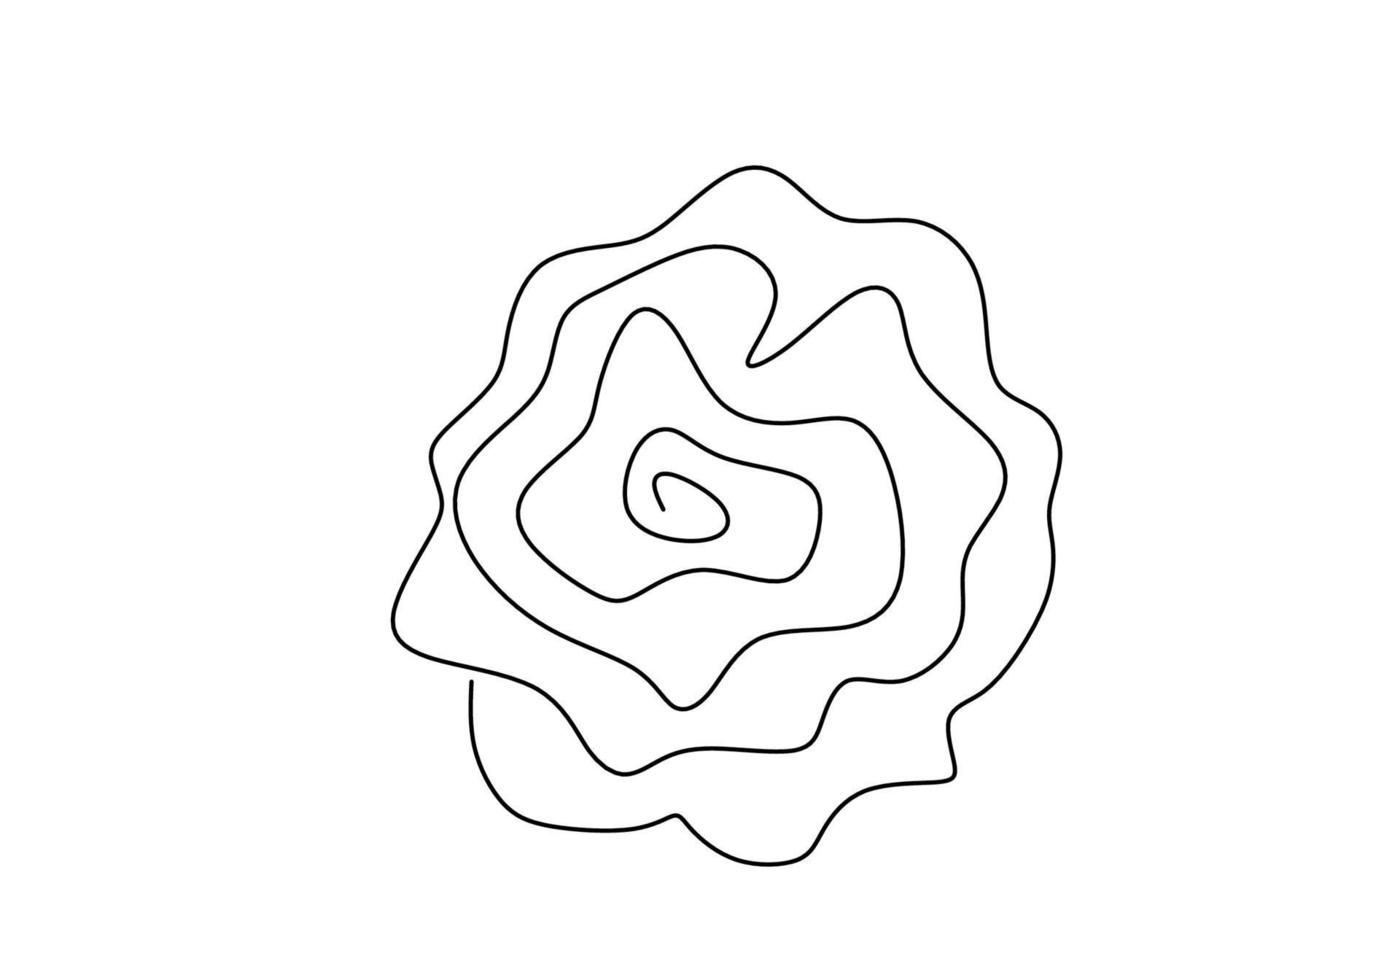 una línea continua de diseño de rosas dibujadas a mano estilo minimalista. hermoso símbolo rosa del amor aislado sobre fondo blanco. tema de flores románticas. ilustración de diseño vectorial vector